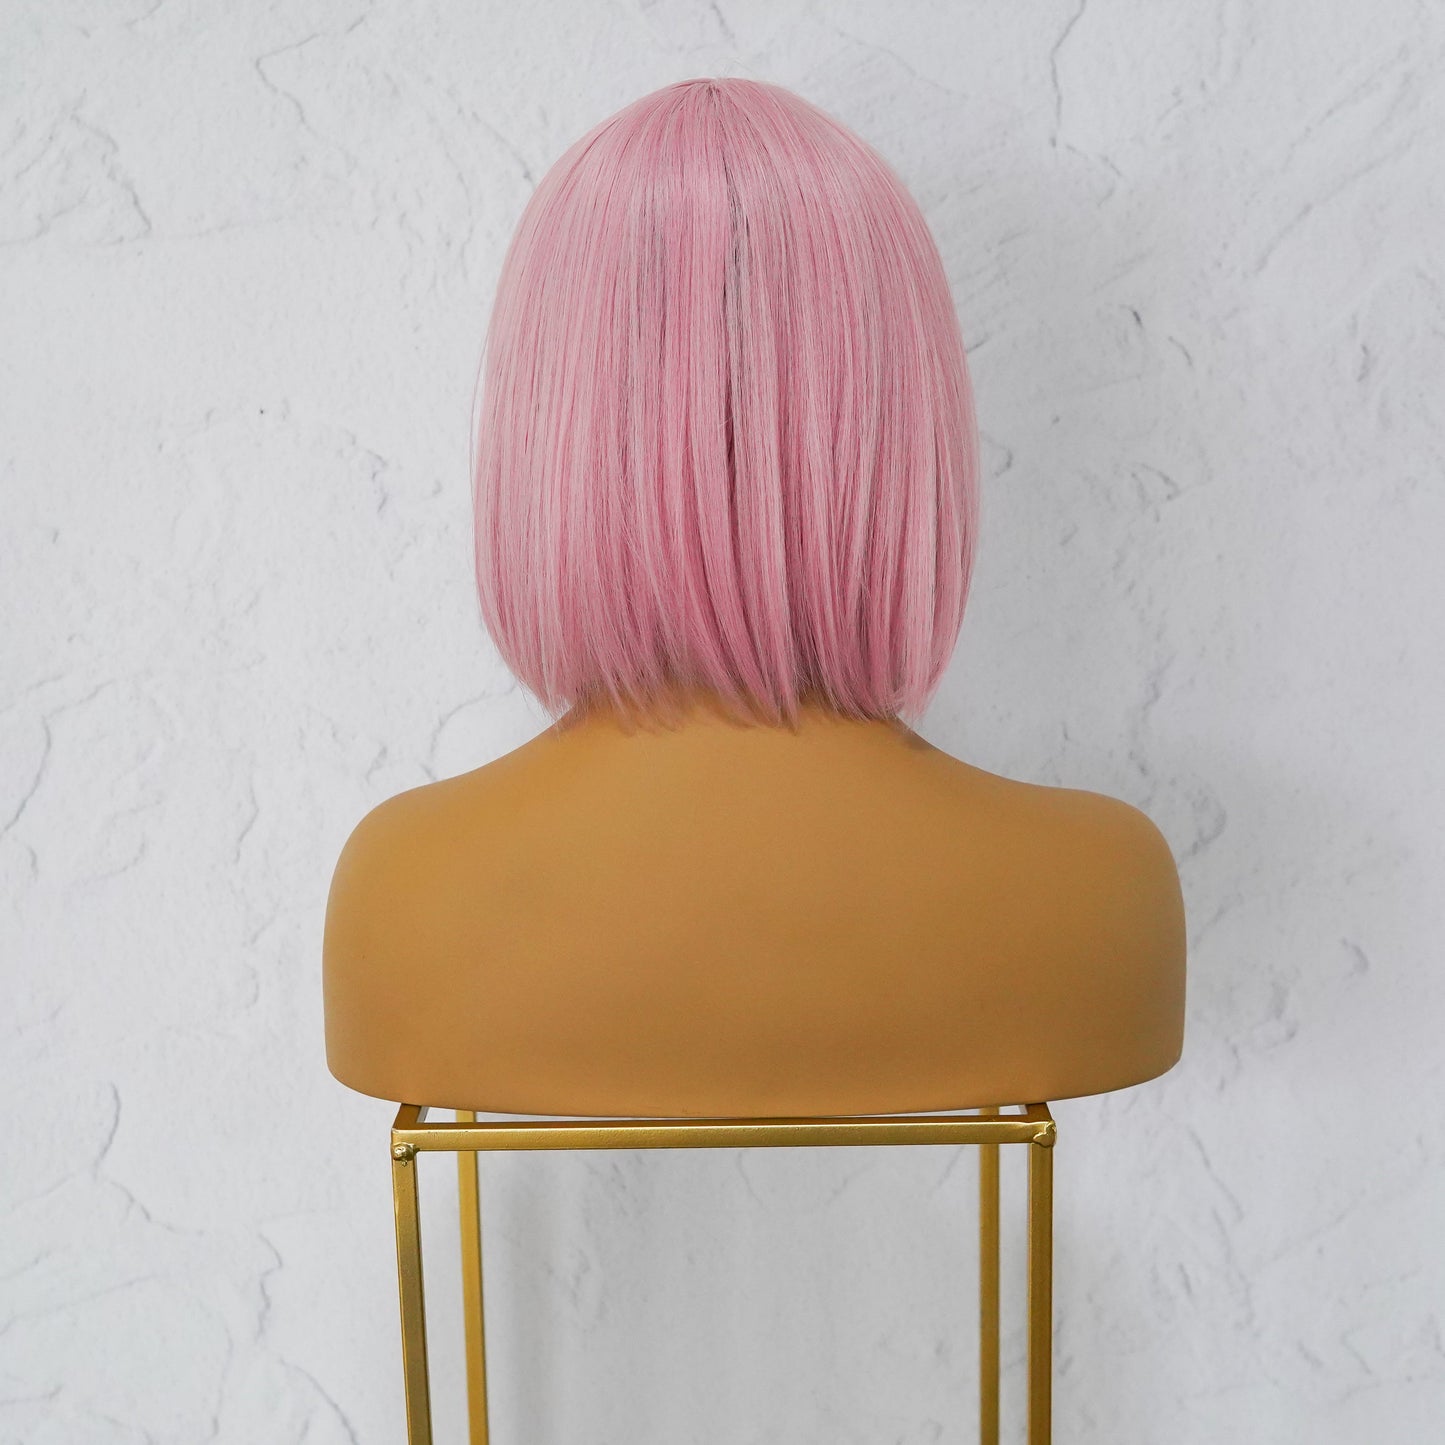 COURTNEY Pink Fringe Wig